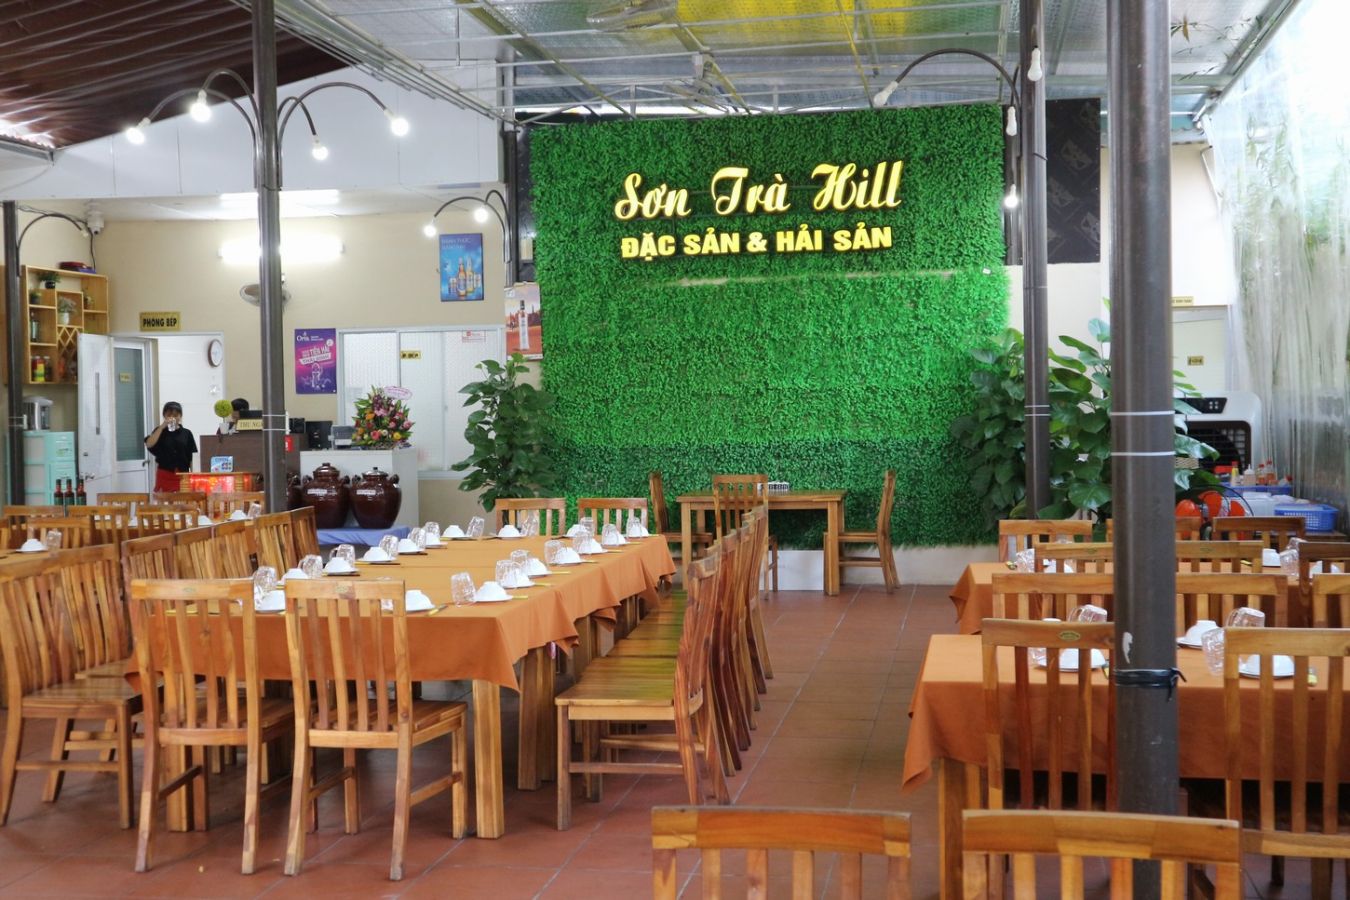 Sơn Trà Hill đà nẵng, nhà hàng phục vụ hải sản tươi sống cho khách đoàn và đặc sản